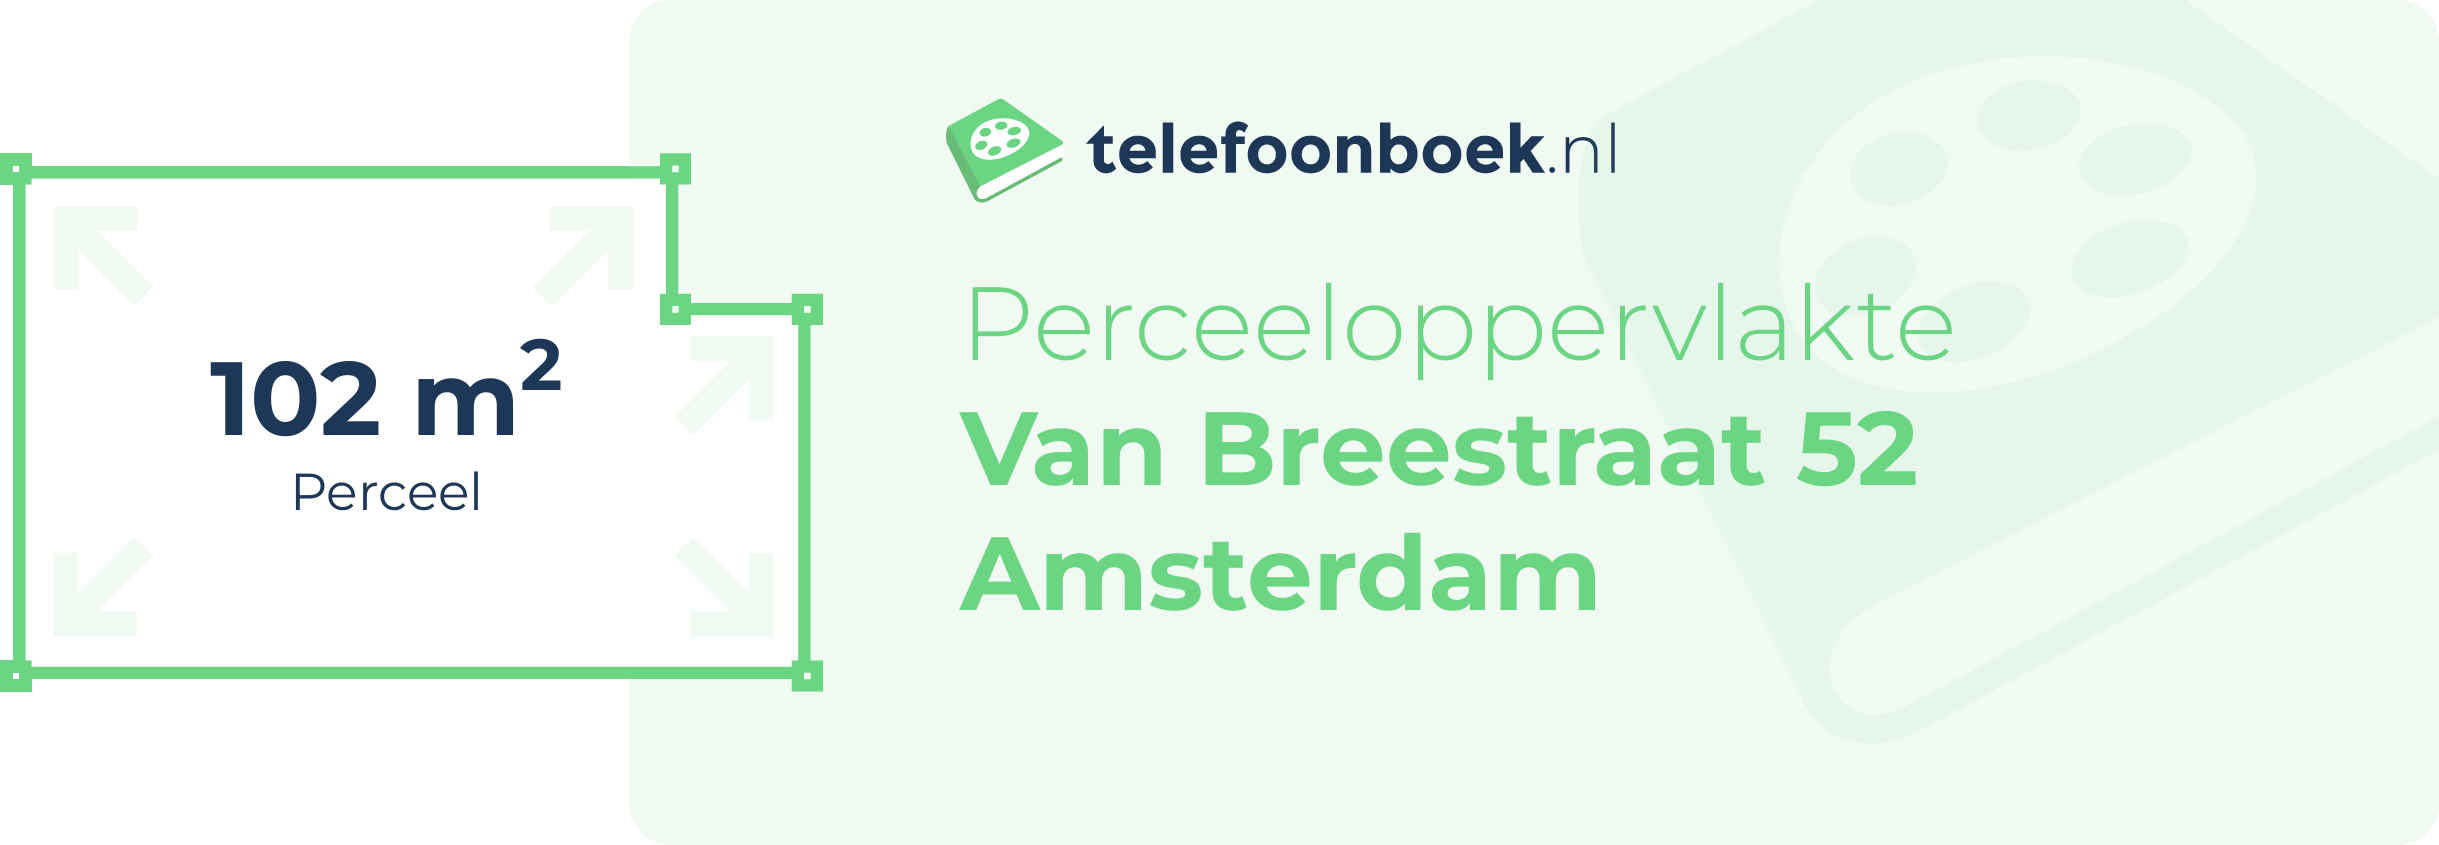 Perceeloppervlakte Van Breestraat 52 Amsterdam